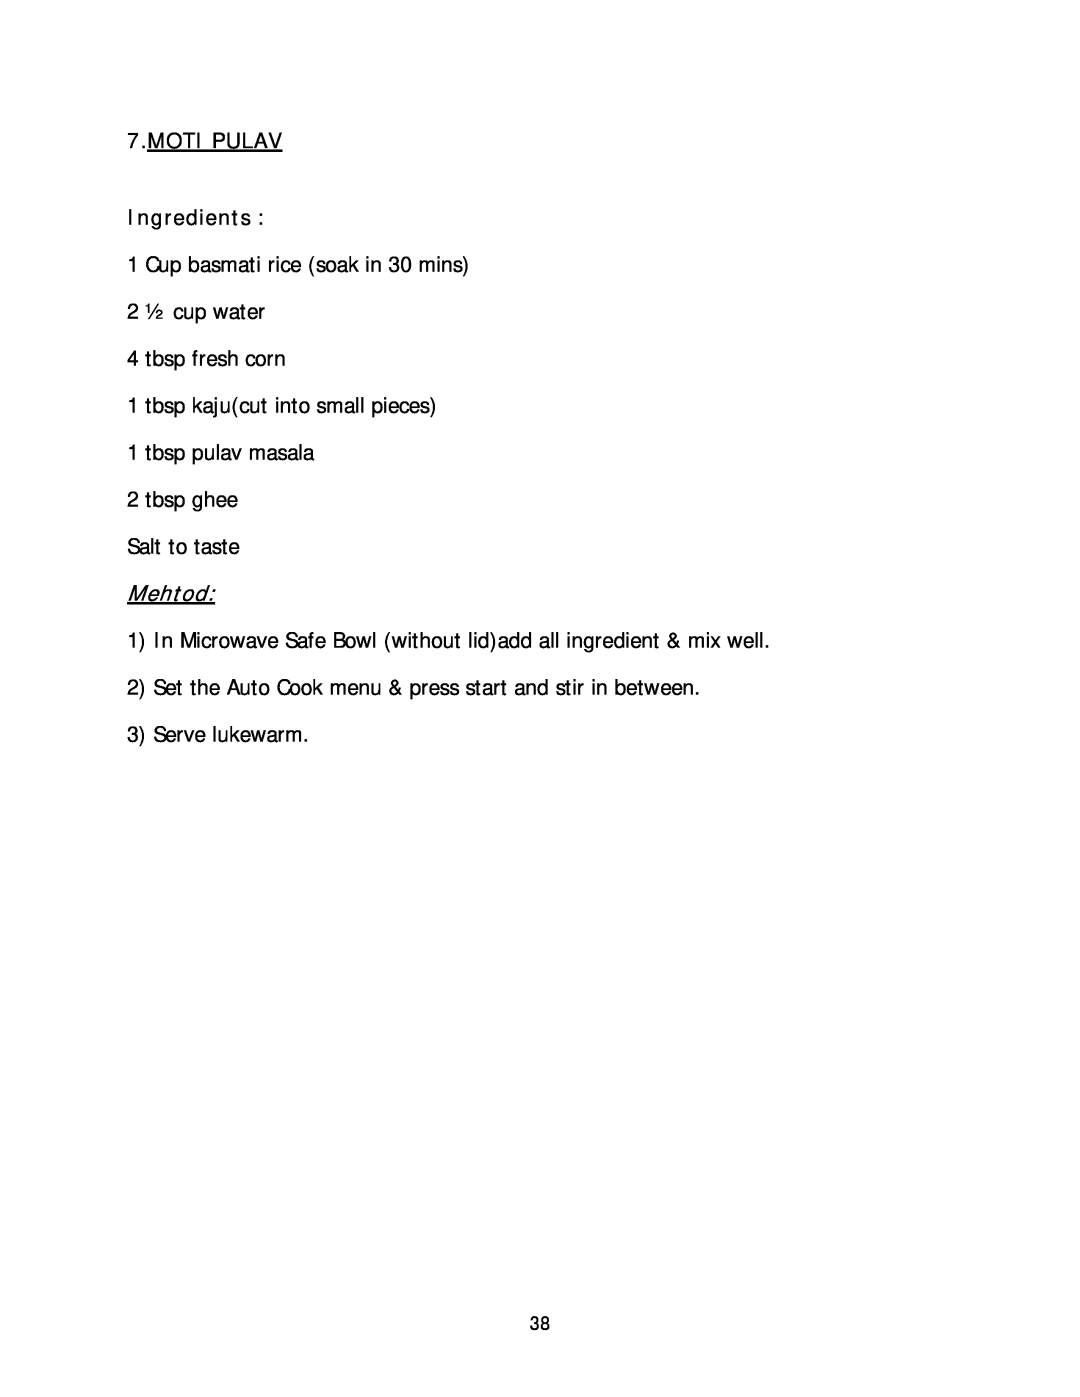 Haier HIL 2810EGCB manual MOTI PULAV Ingredients, Mehtod 